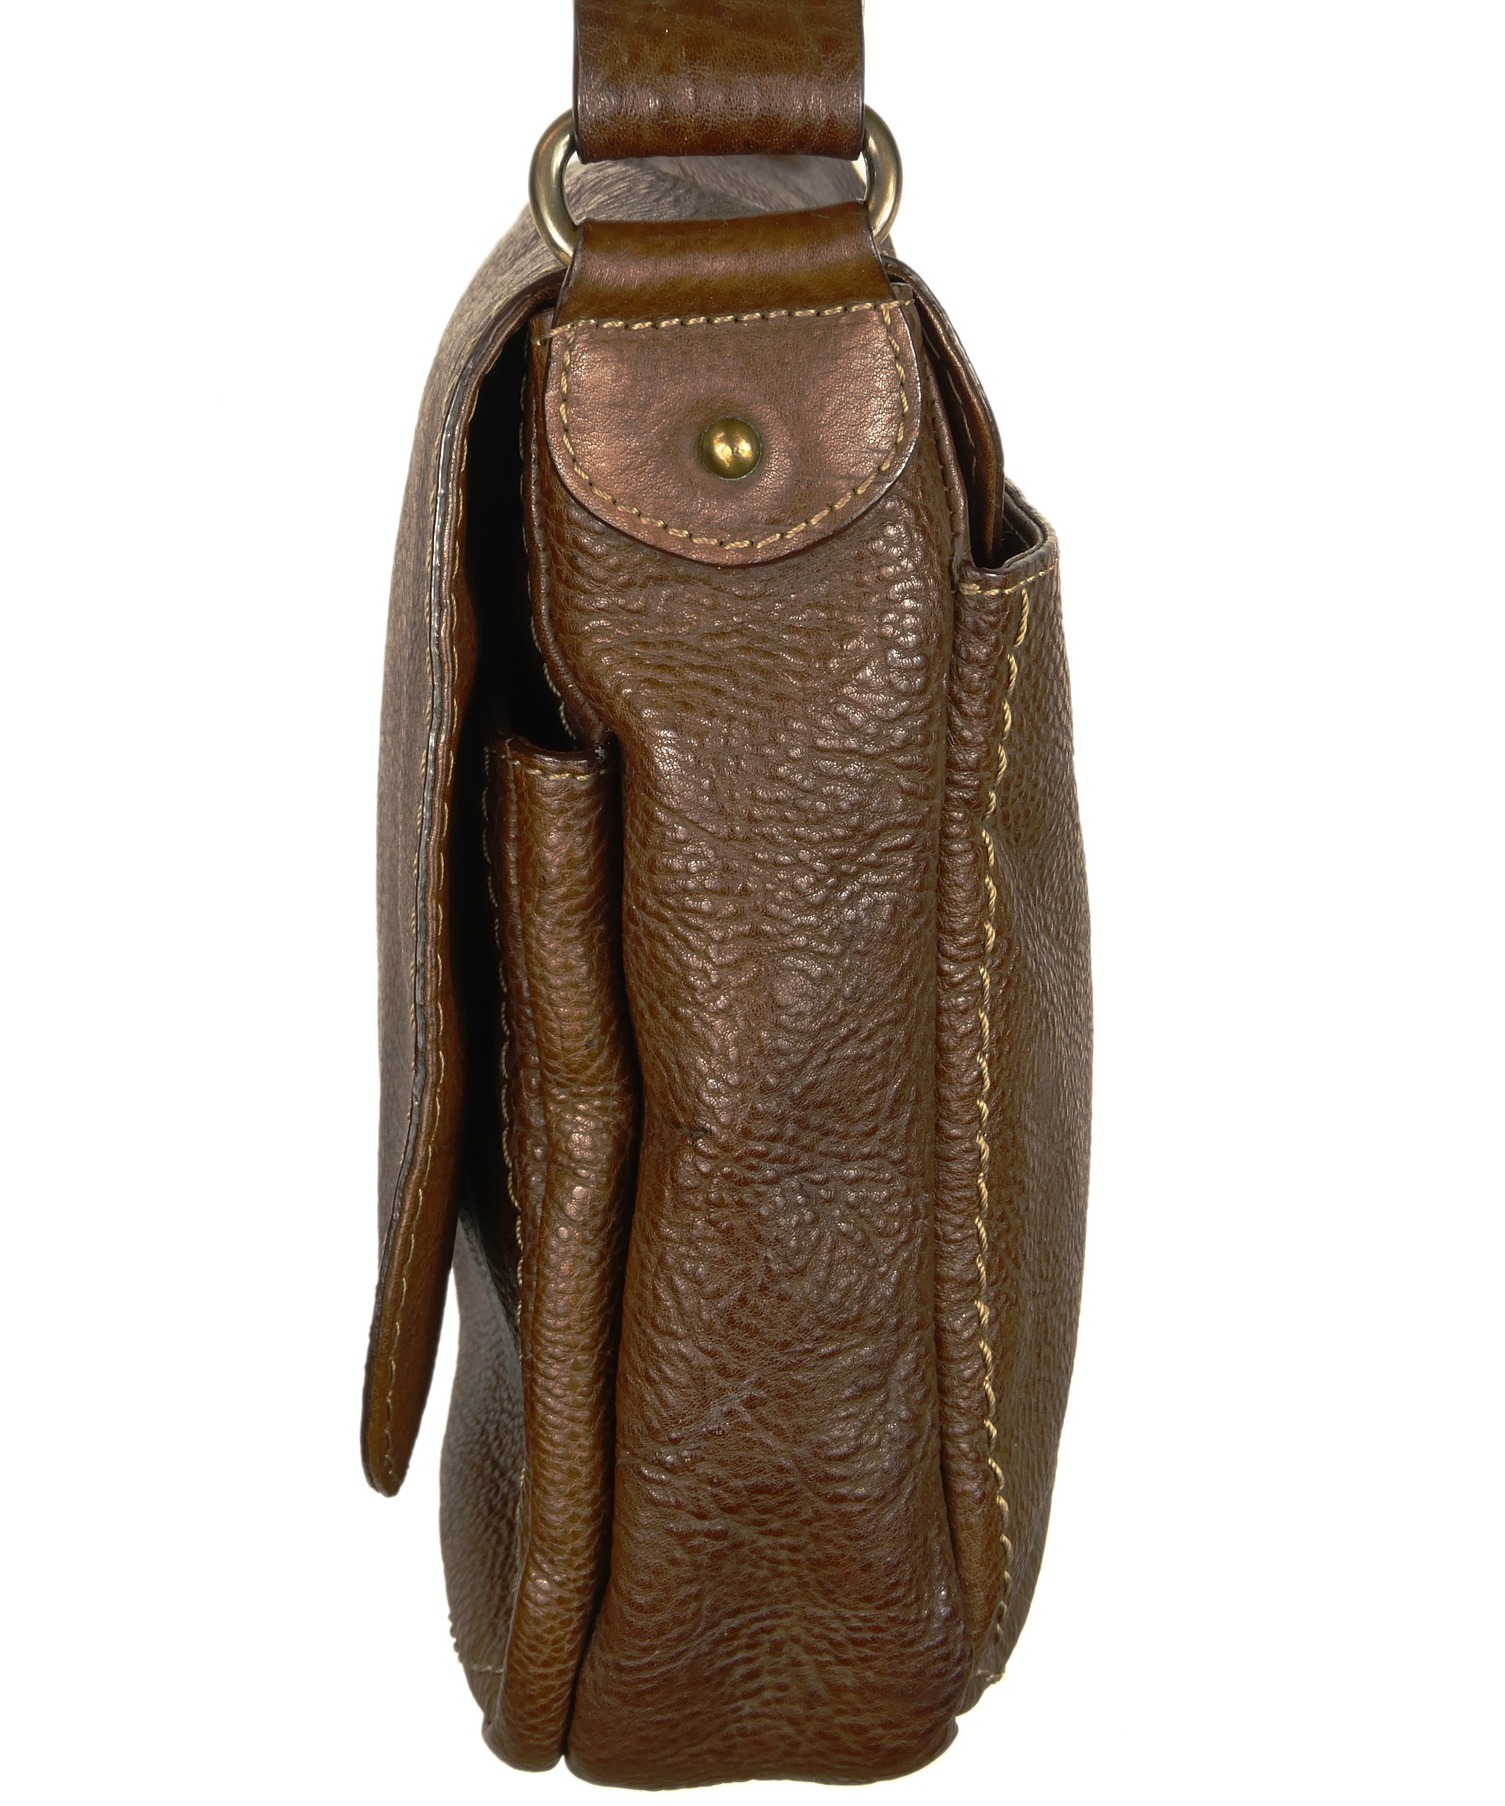 土屋鞄 (ツチヤカバン) トーンオイルヌメ ショルダー こげ茶 ブラウン サイズ:A4収納可